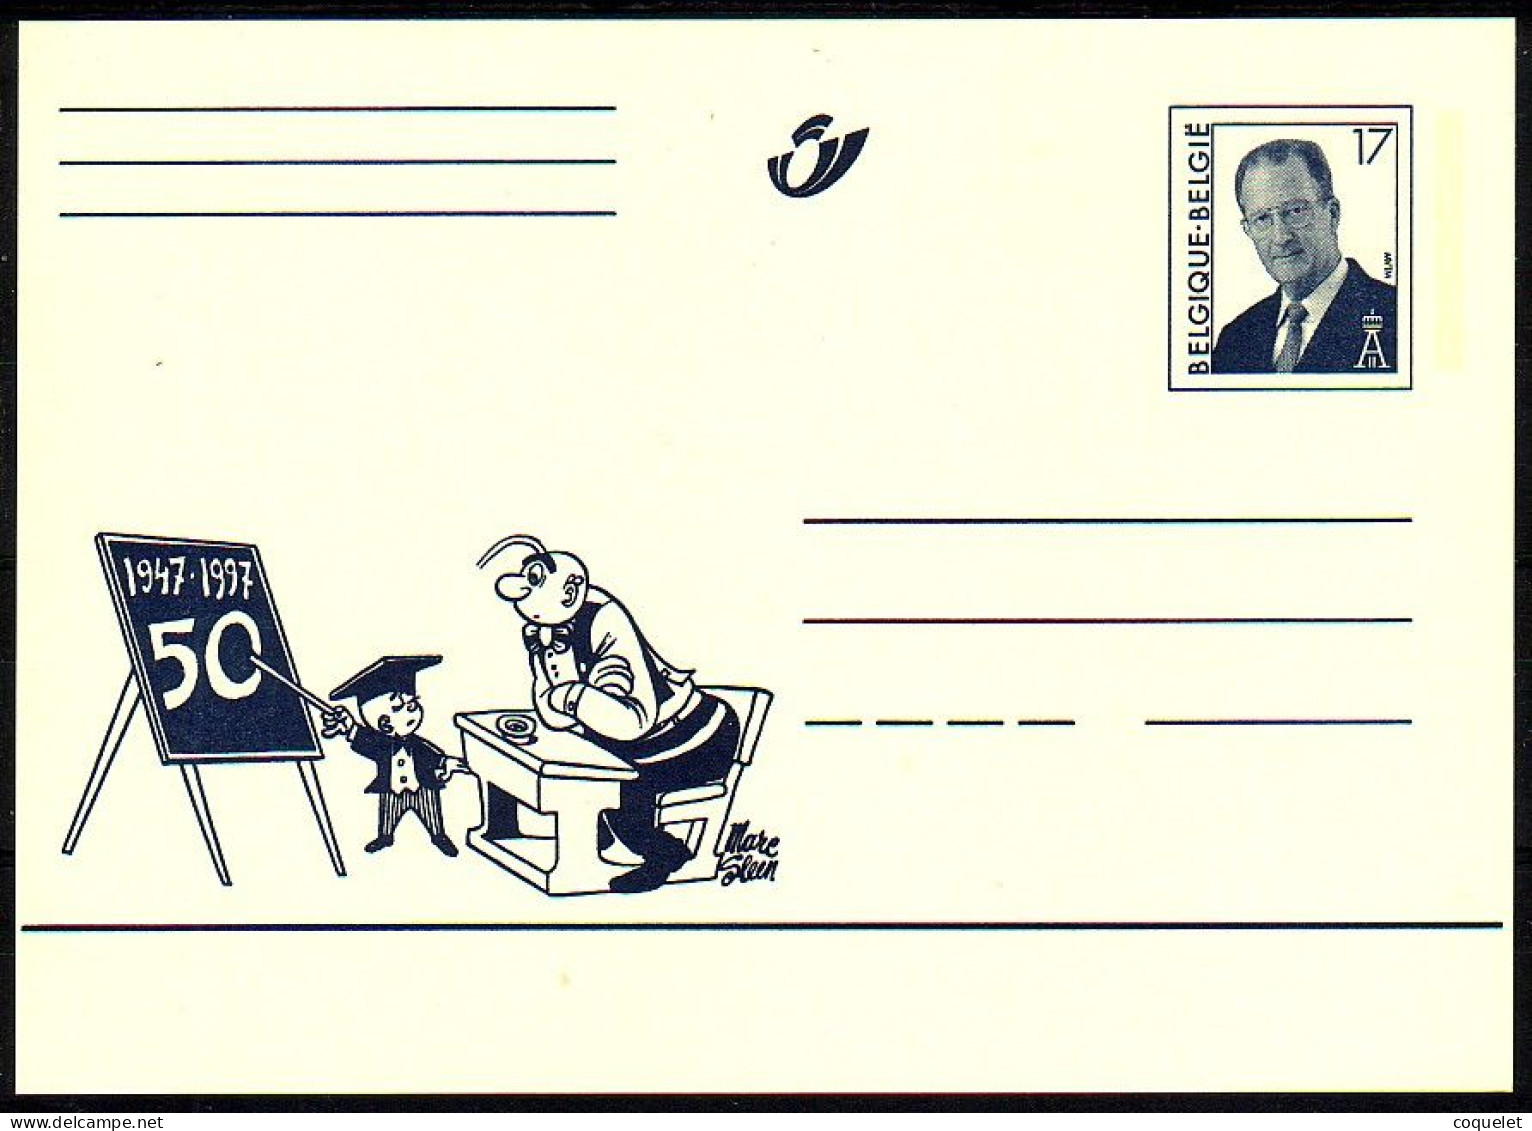 Belgique - Entiers Postaux - Cartes Illustrées N° 64 # NERON à L'école # Son Cinquantenaire 1947-1997 - Stripsverhalen